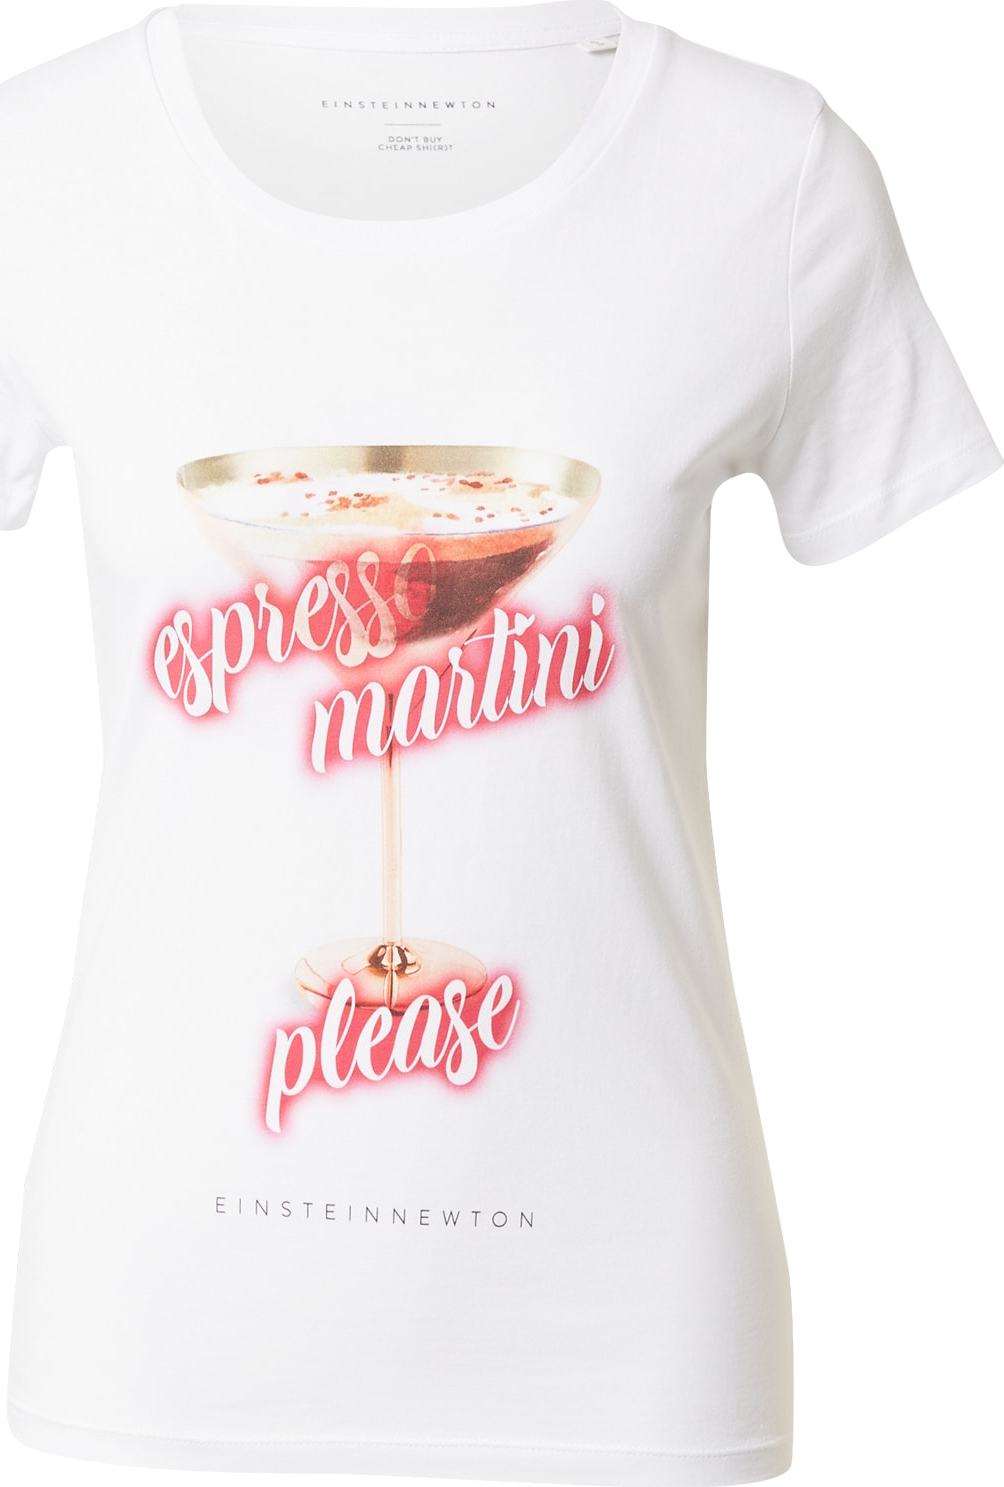 EINSTEIN & NEWTON Tričko 'Espresso Martini' hnědá / červená / bílá